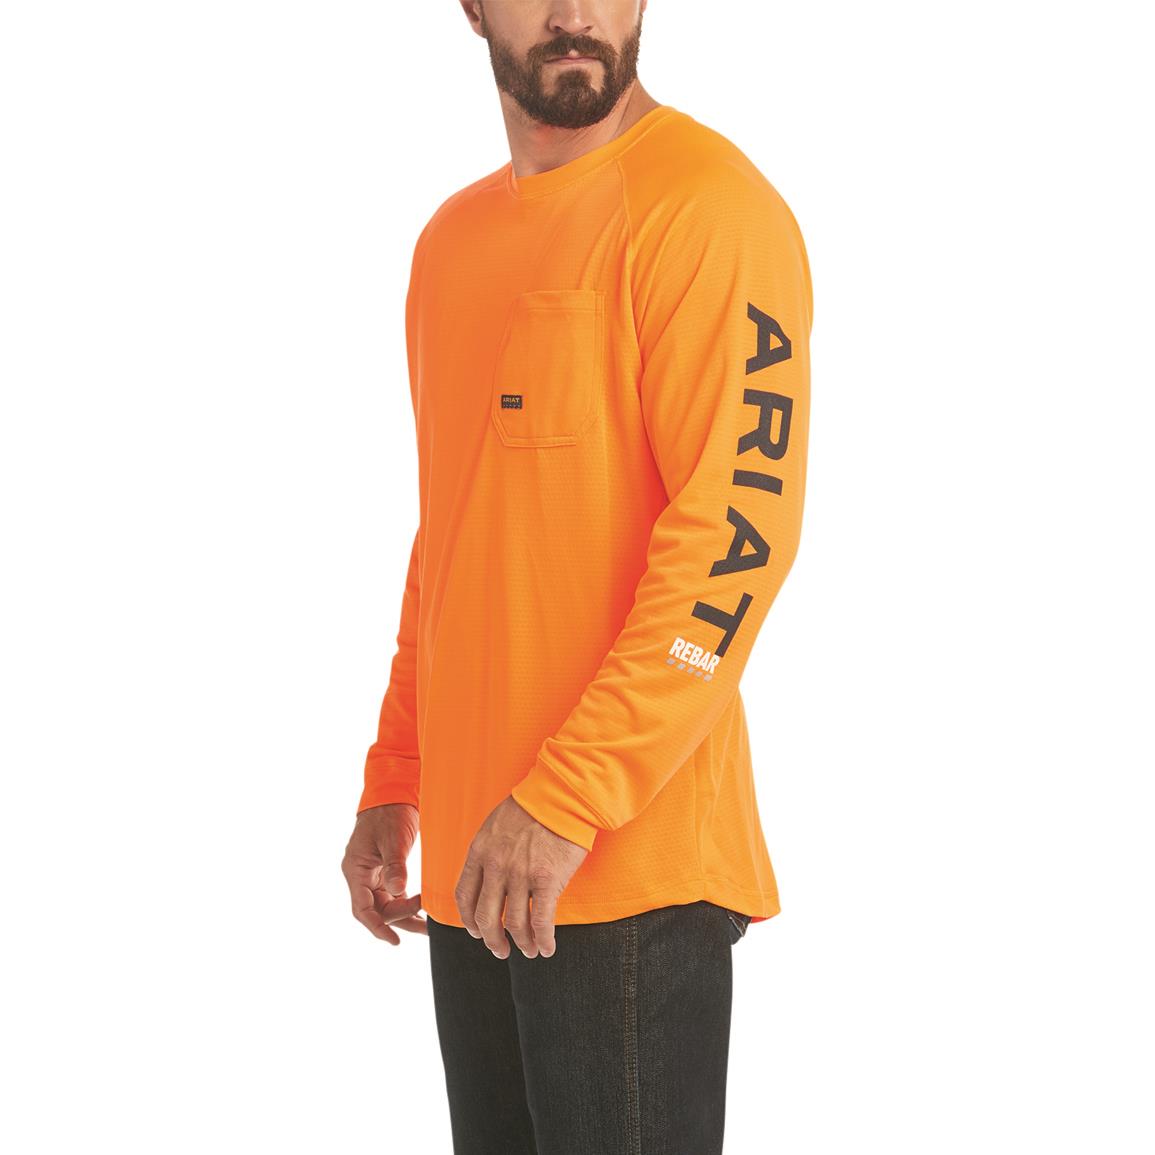 Ariat Men's Rebar Heat Fighter Long Sleeve Shirt, Safety Orange